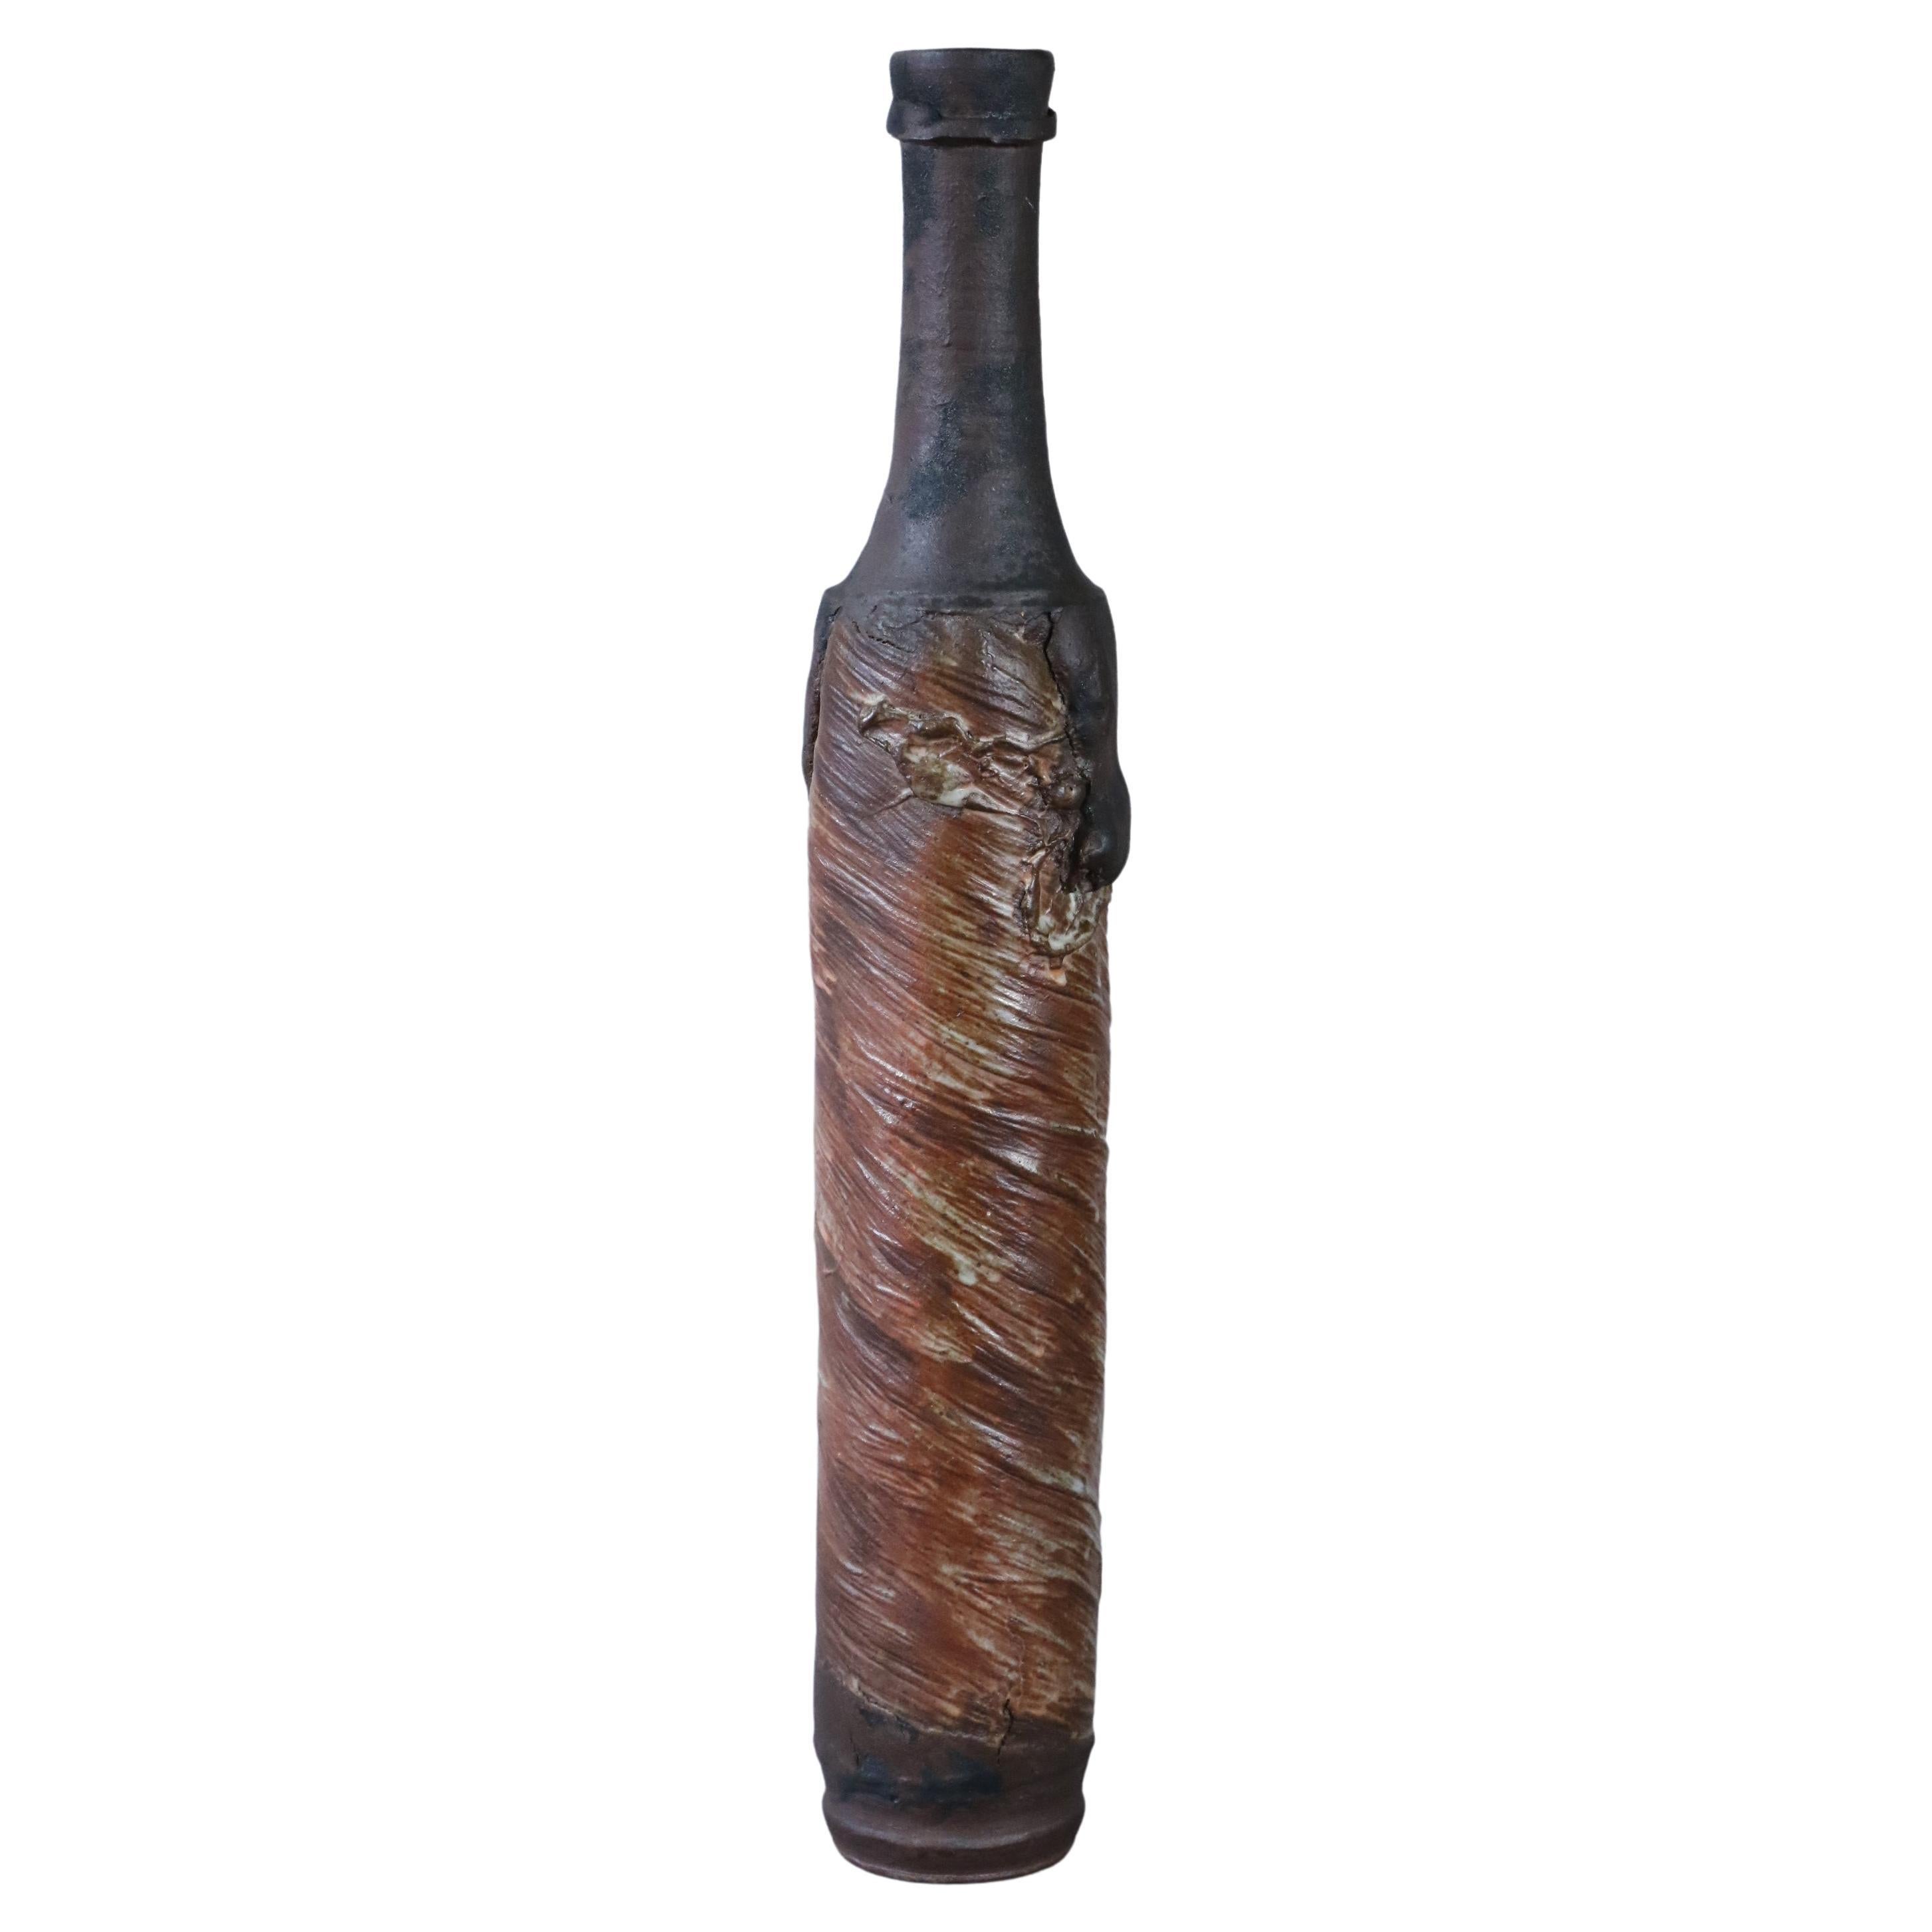 Large stoneware bottle by Alain Gaudebert, Puisaye - Era Joulia Debril Deblander